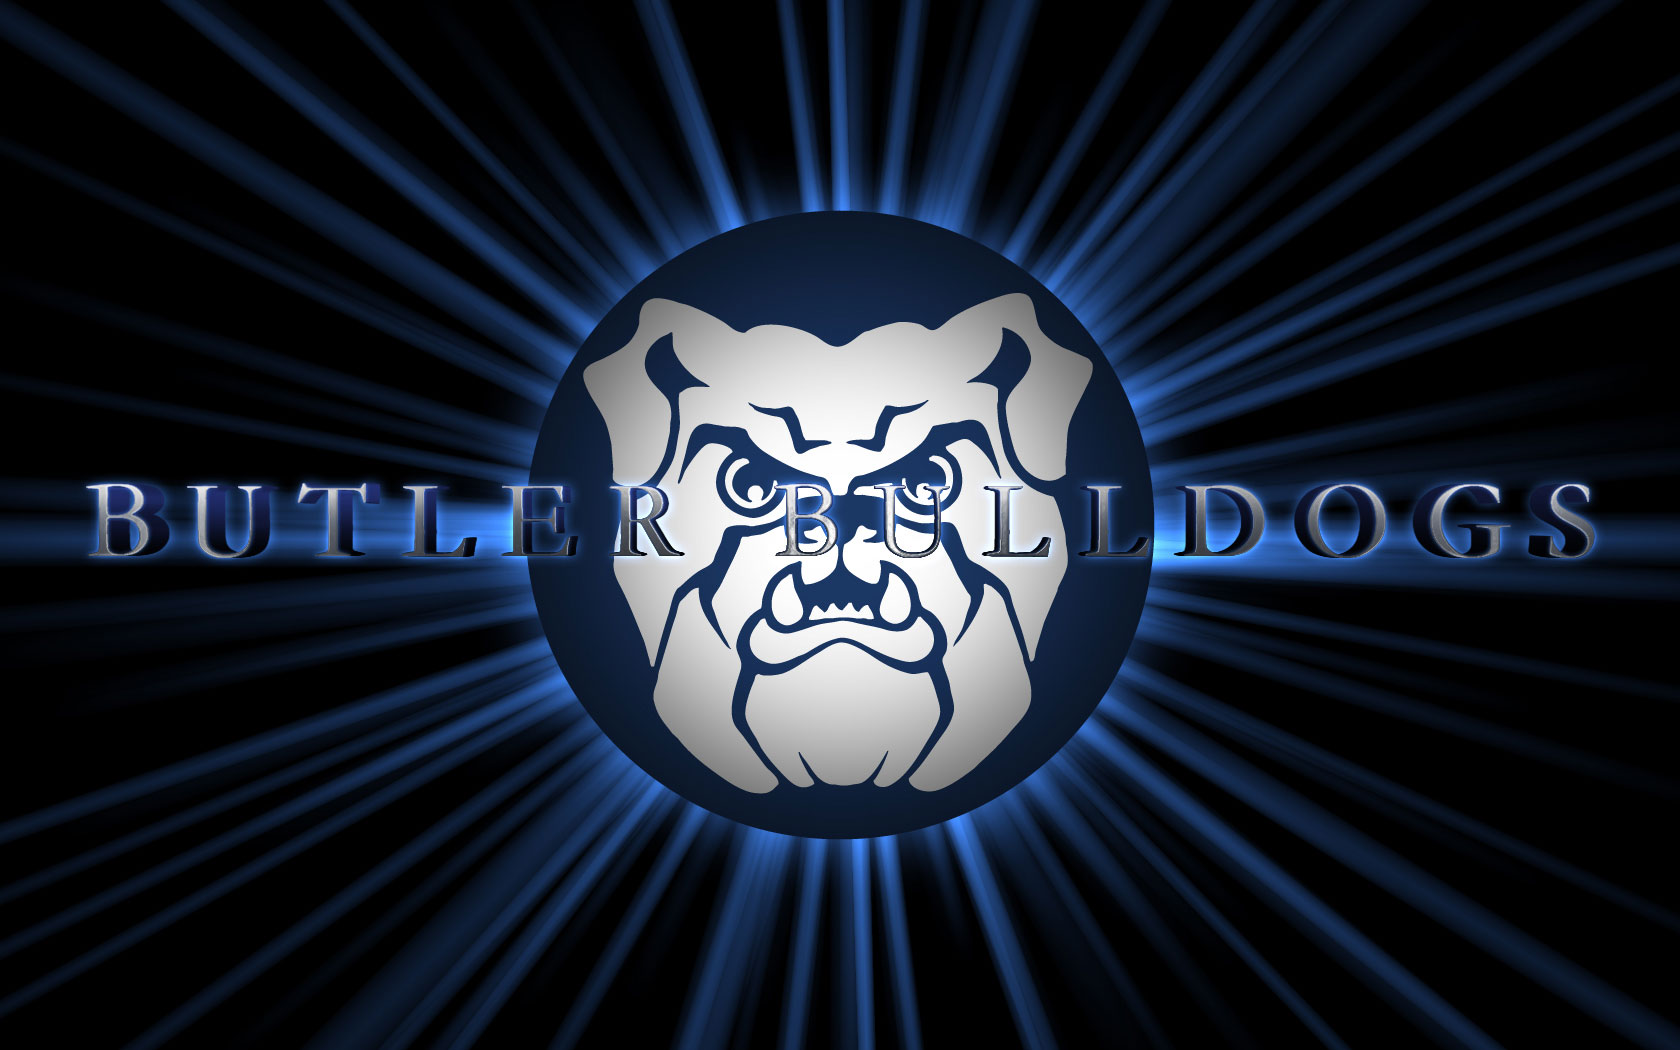 Butler Bulldogs Basketball Wallpaper - Butler University , HD Wallpaper & Backgrounds